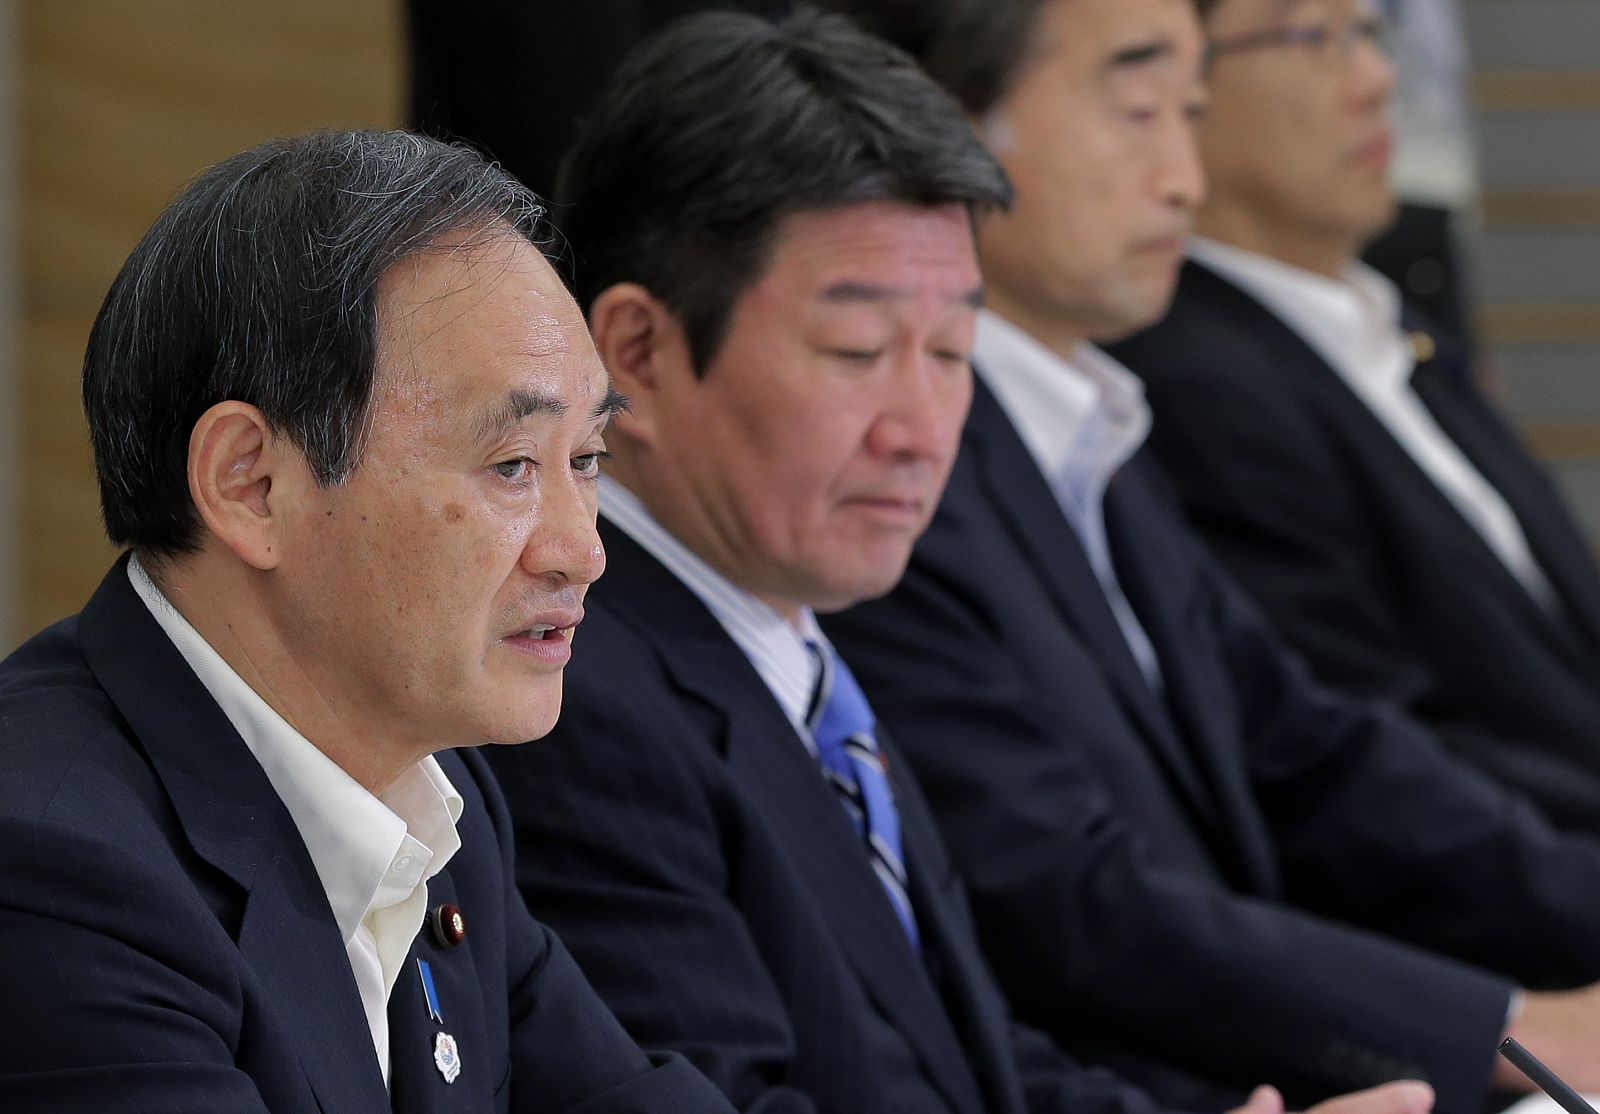 El secretario jefe del gabinete de japón, Yoshihide Suga de Japón, habla en la primera reunión de gabinete de los reactores nucleares de desmantelamiento y del control de la contaminación radiactiva de fugas de agua en la central de Fukushima.